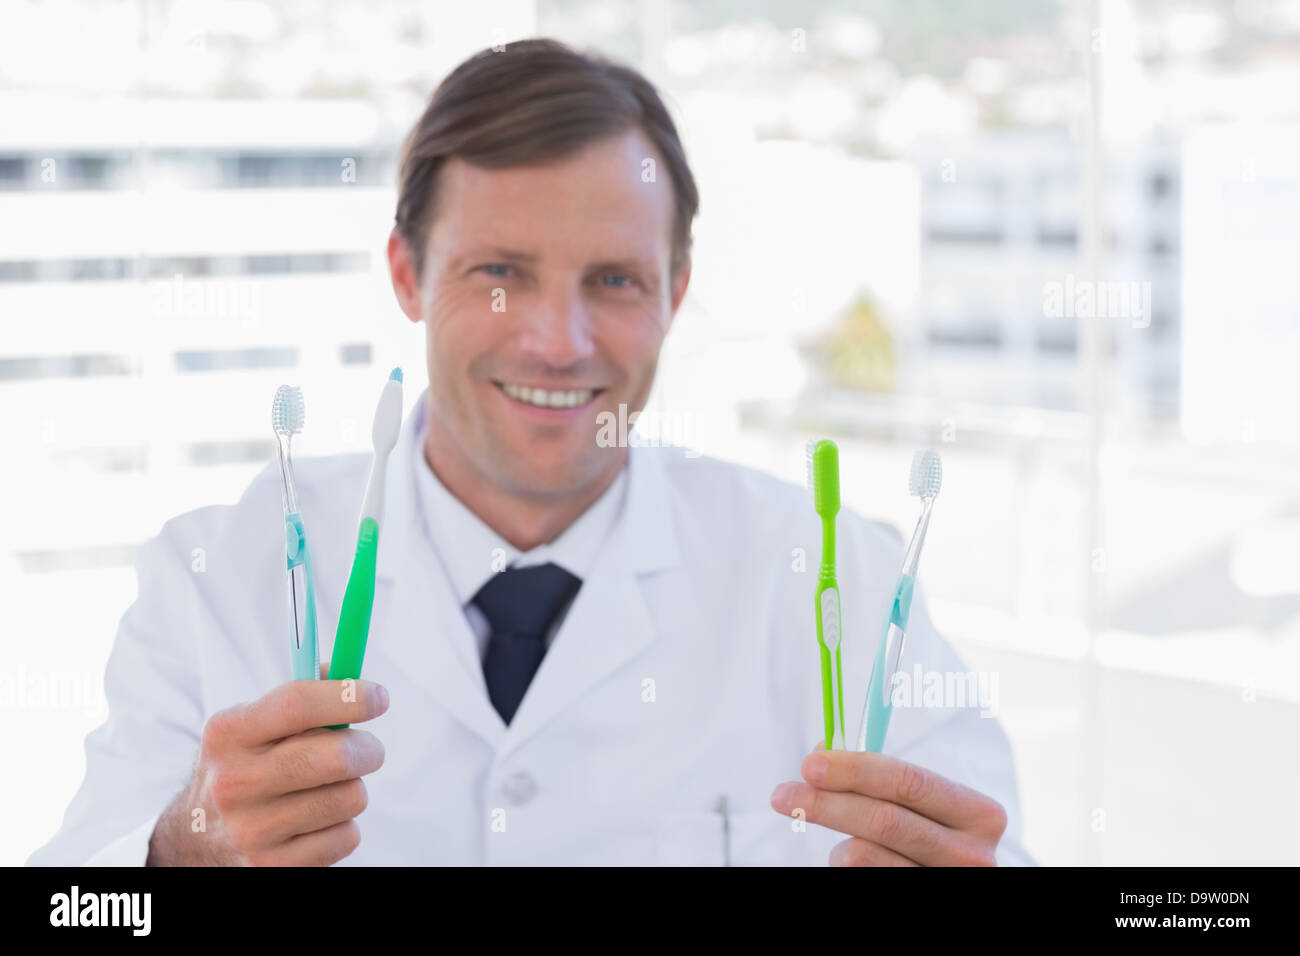 Smiling doctor holding deux brosses à dents Banque D'Images